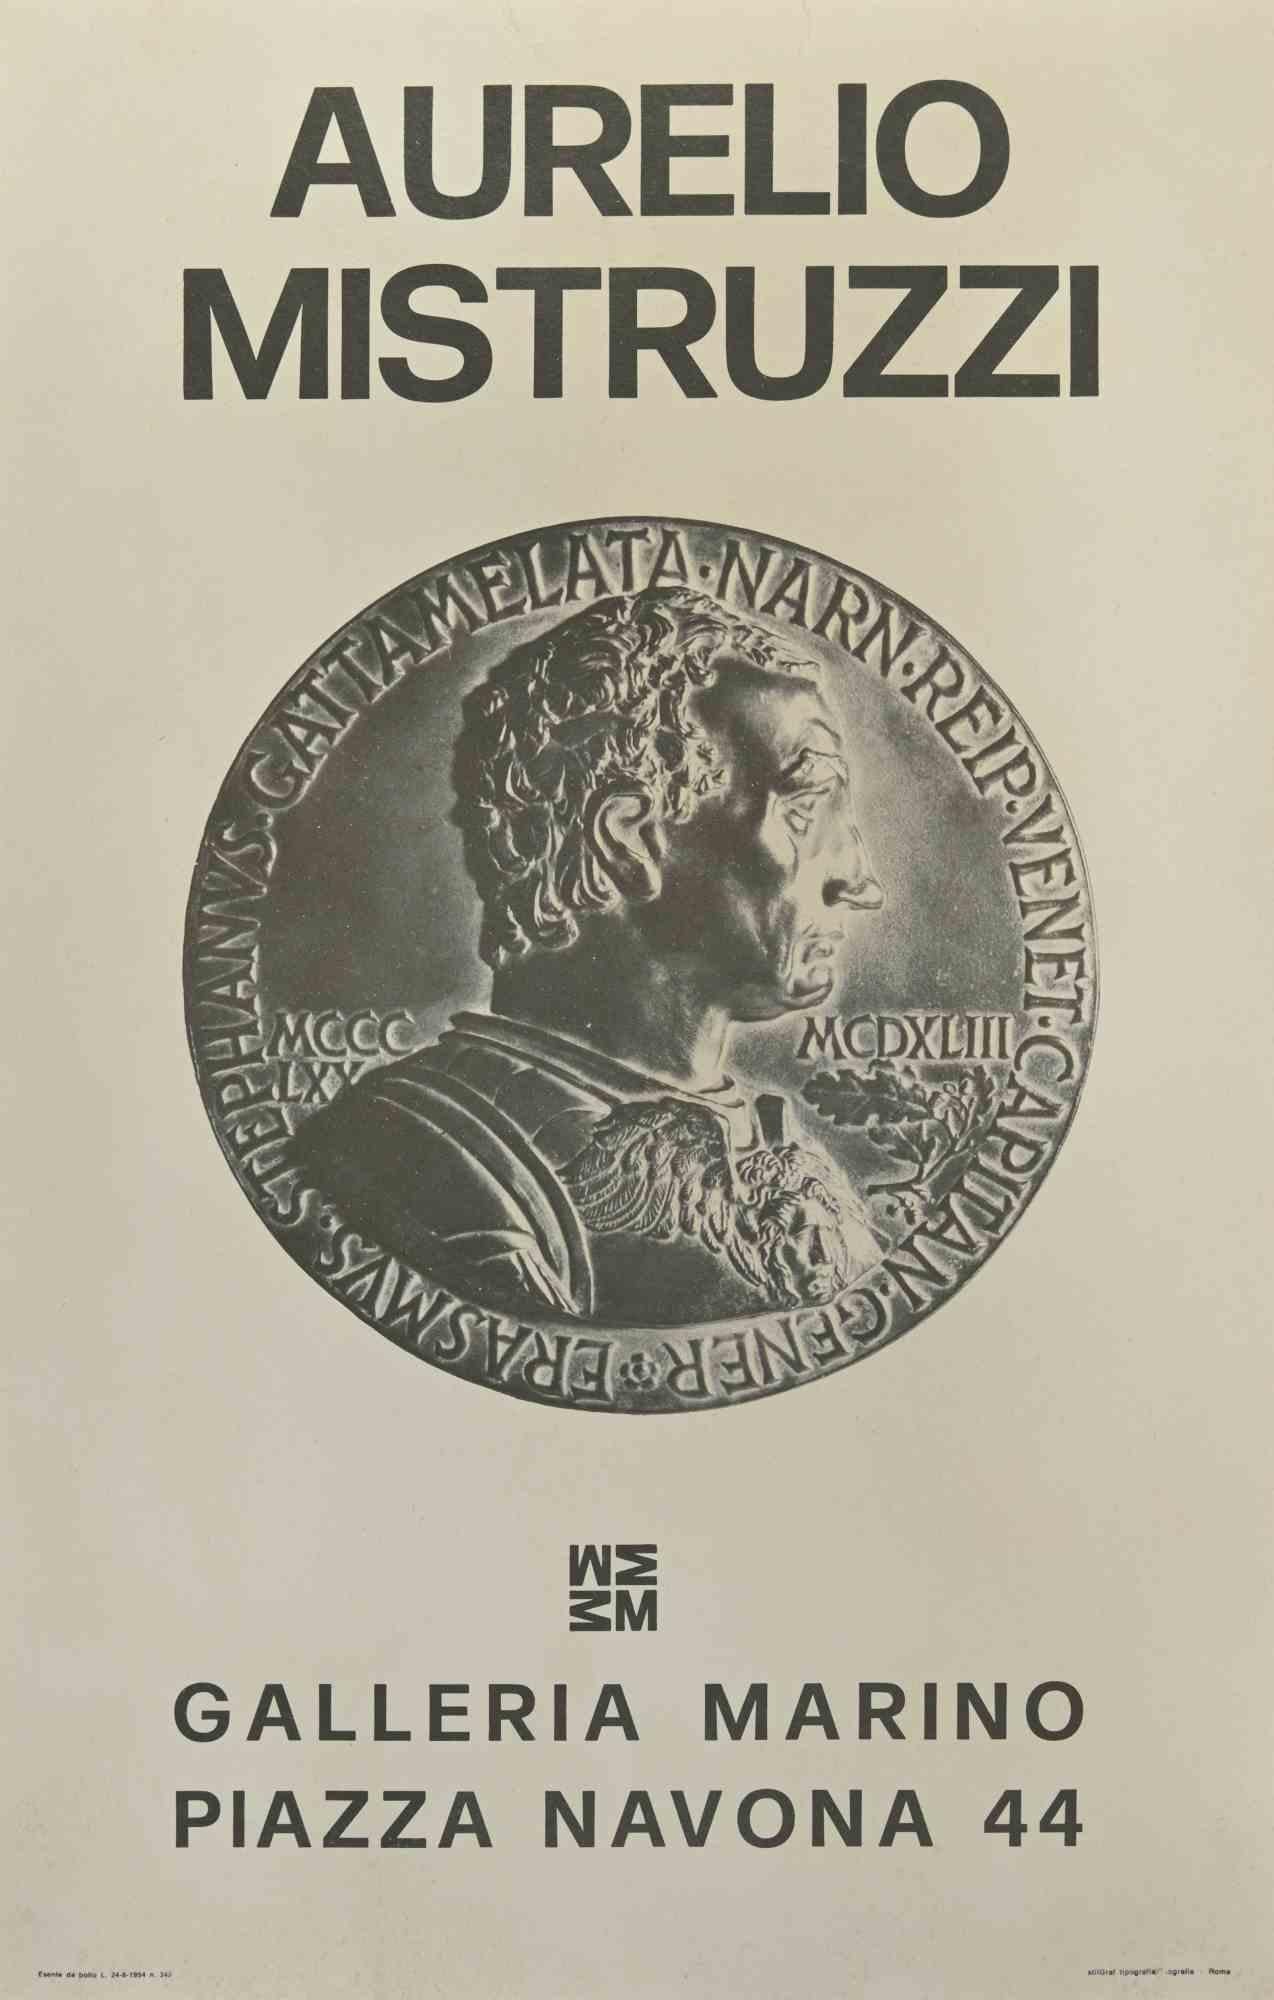 Aurelio Mistruzzi - Affiche d'exposition - Impression offset - 20e siècle